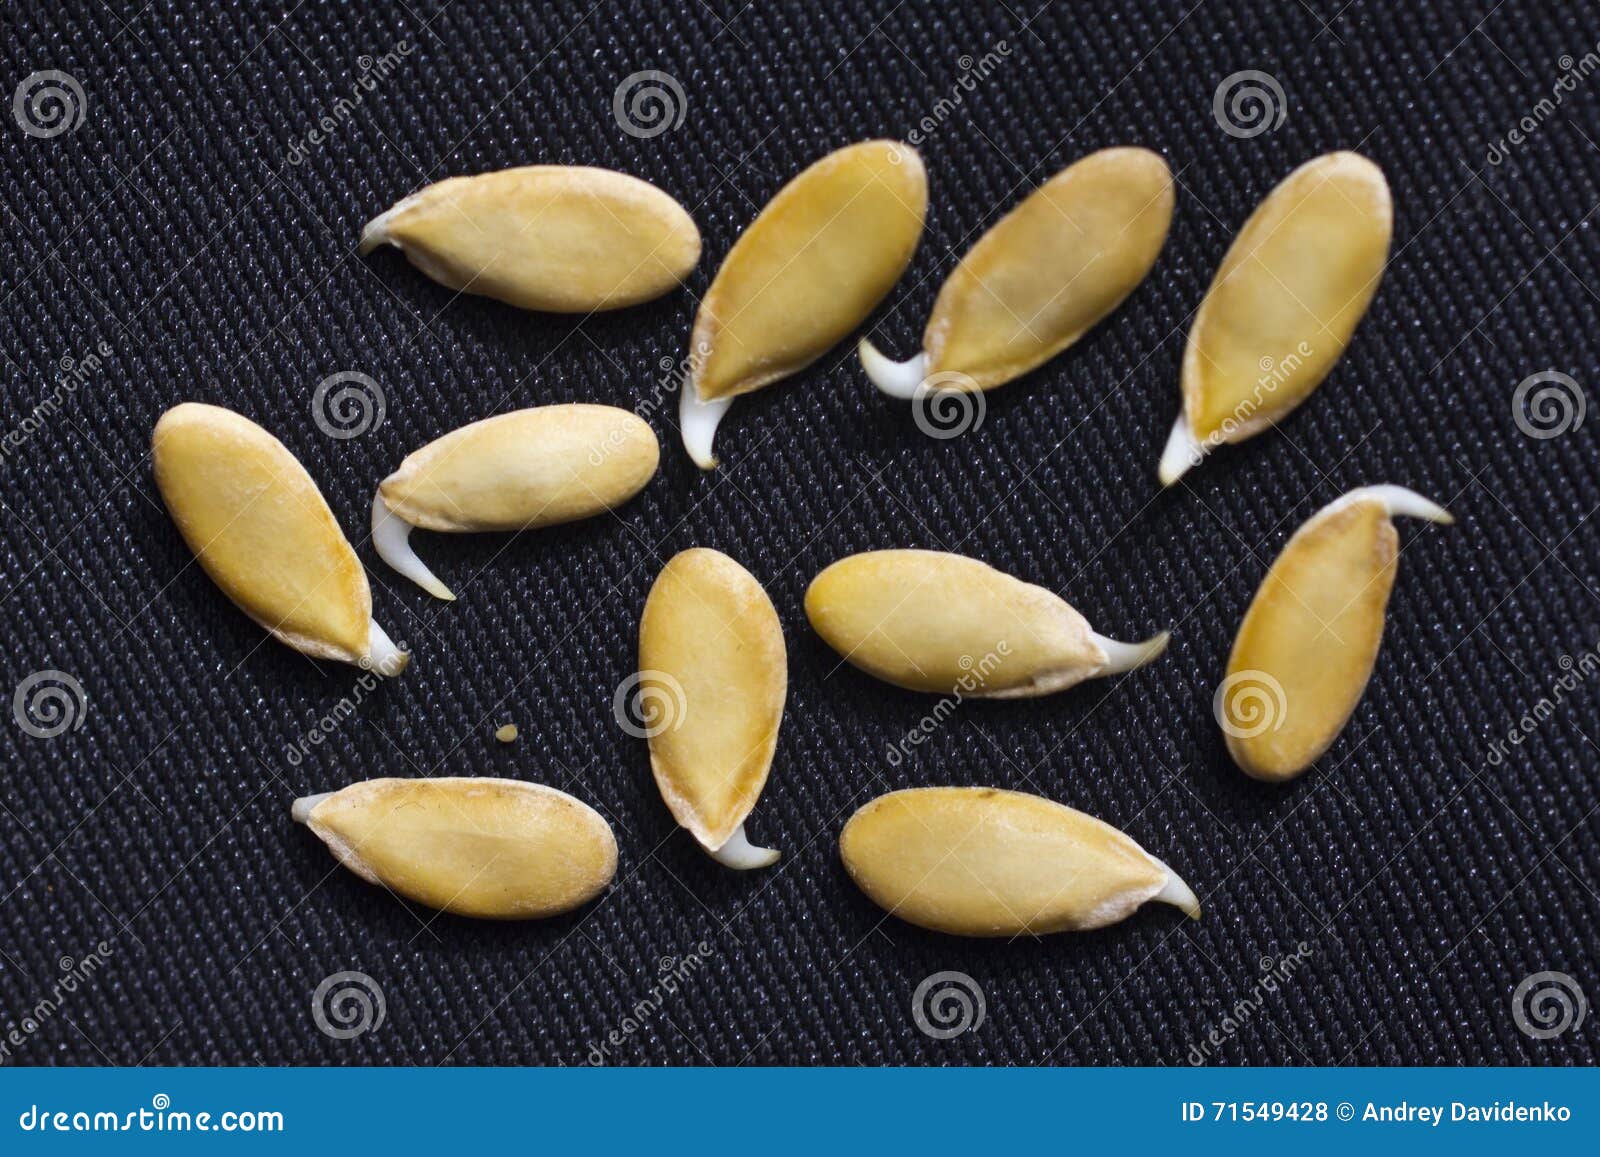 Проросшие семена дыни. Семена дыни. Семечки дыни. Пророщенные семена дыни. Проросшие семена арбуза.